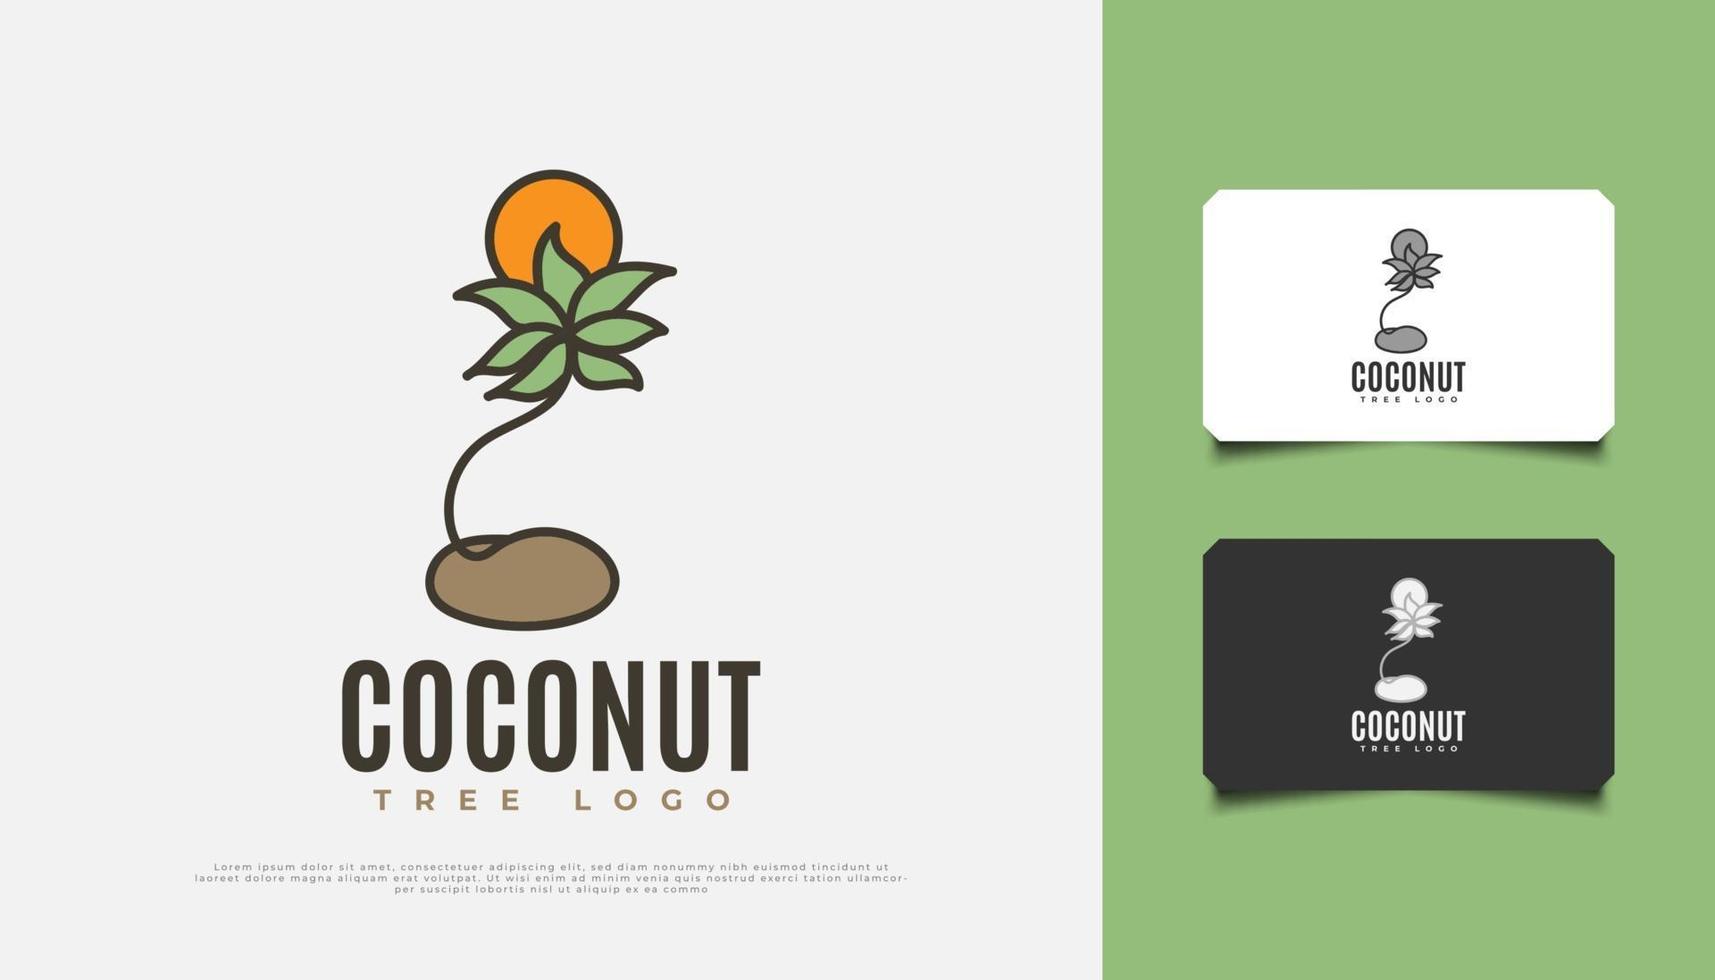 conception de logo de cocotier et de soleil dans un style cartoon adapté à l'industrie de la villégiature, des voyages ou du tourisme vecteur